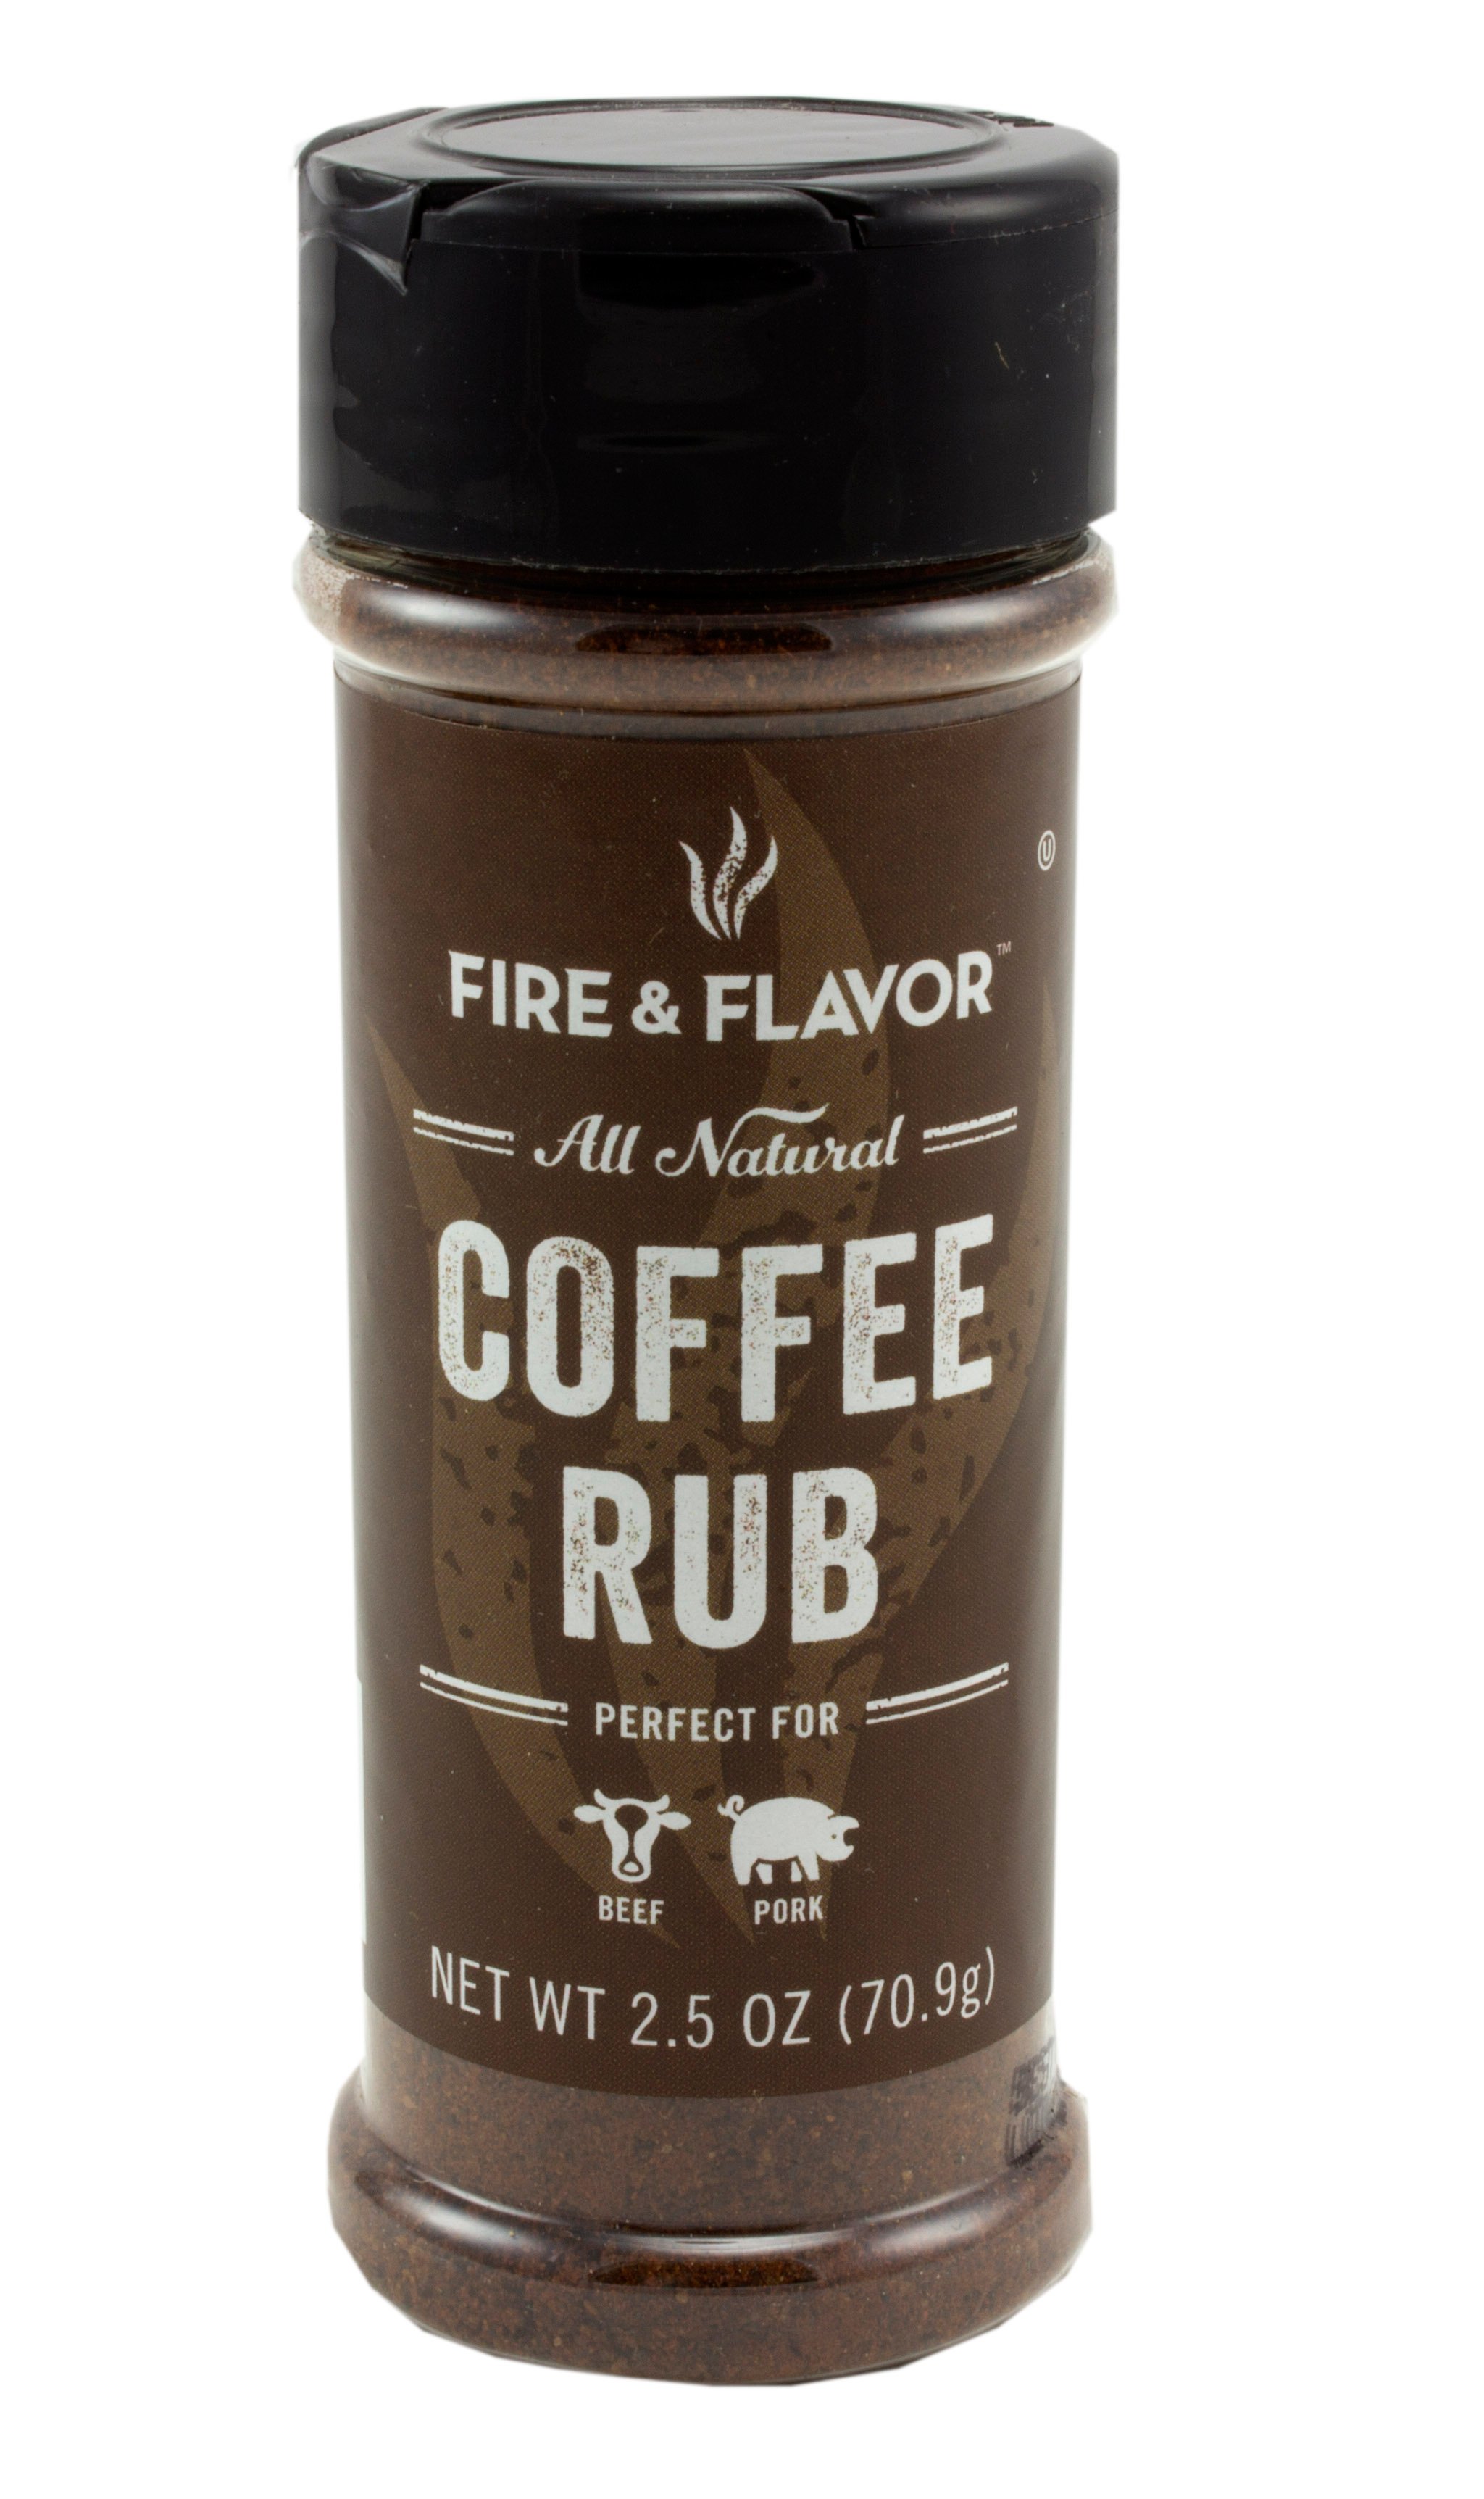 Fire & Flavor Coffee Rub - Shop Spice Mixes at H-E-B